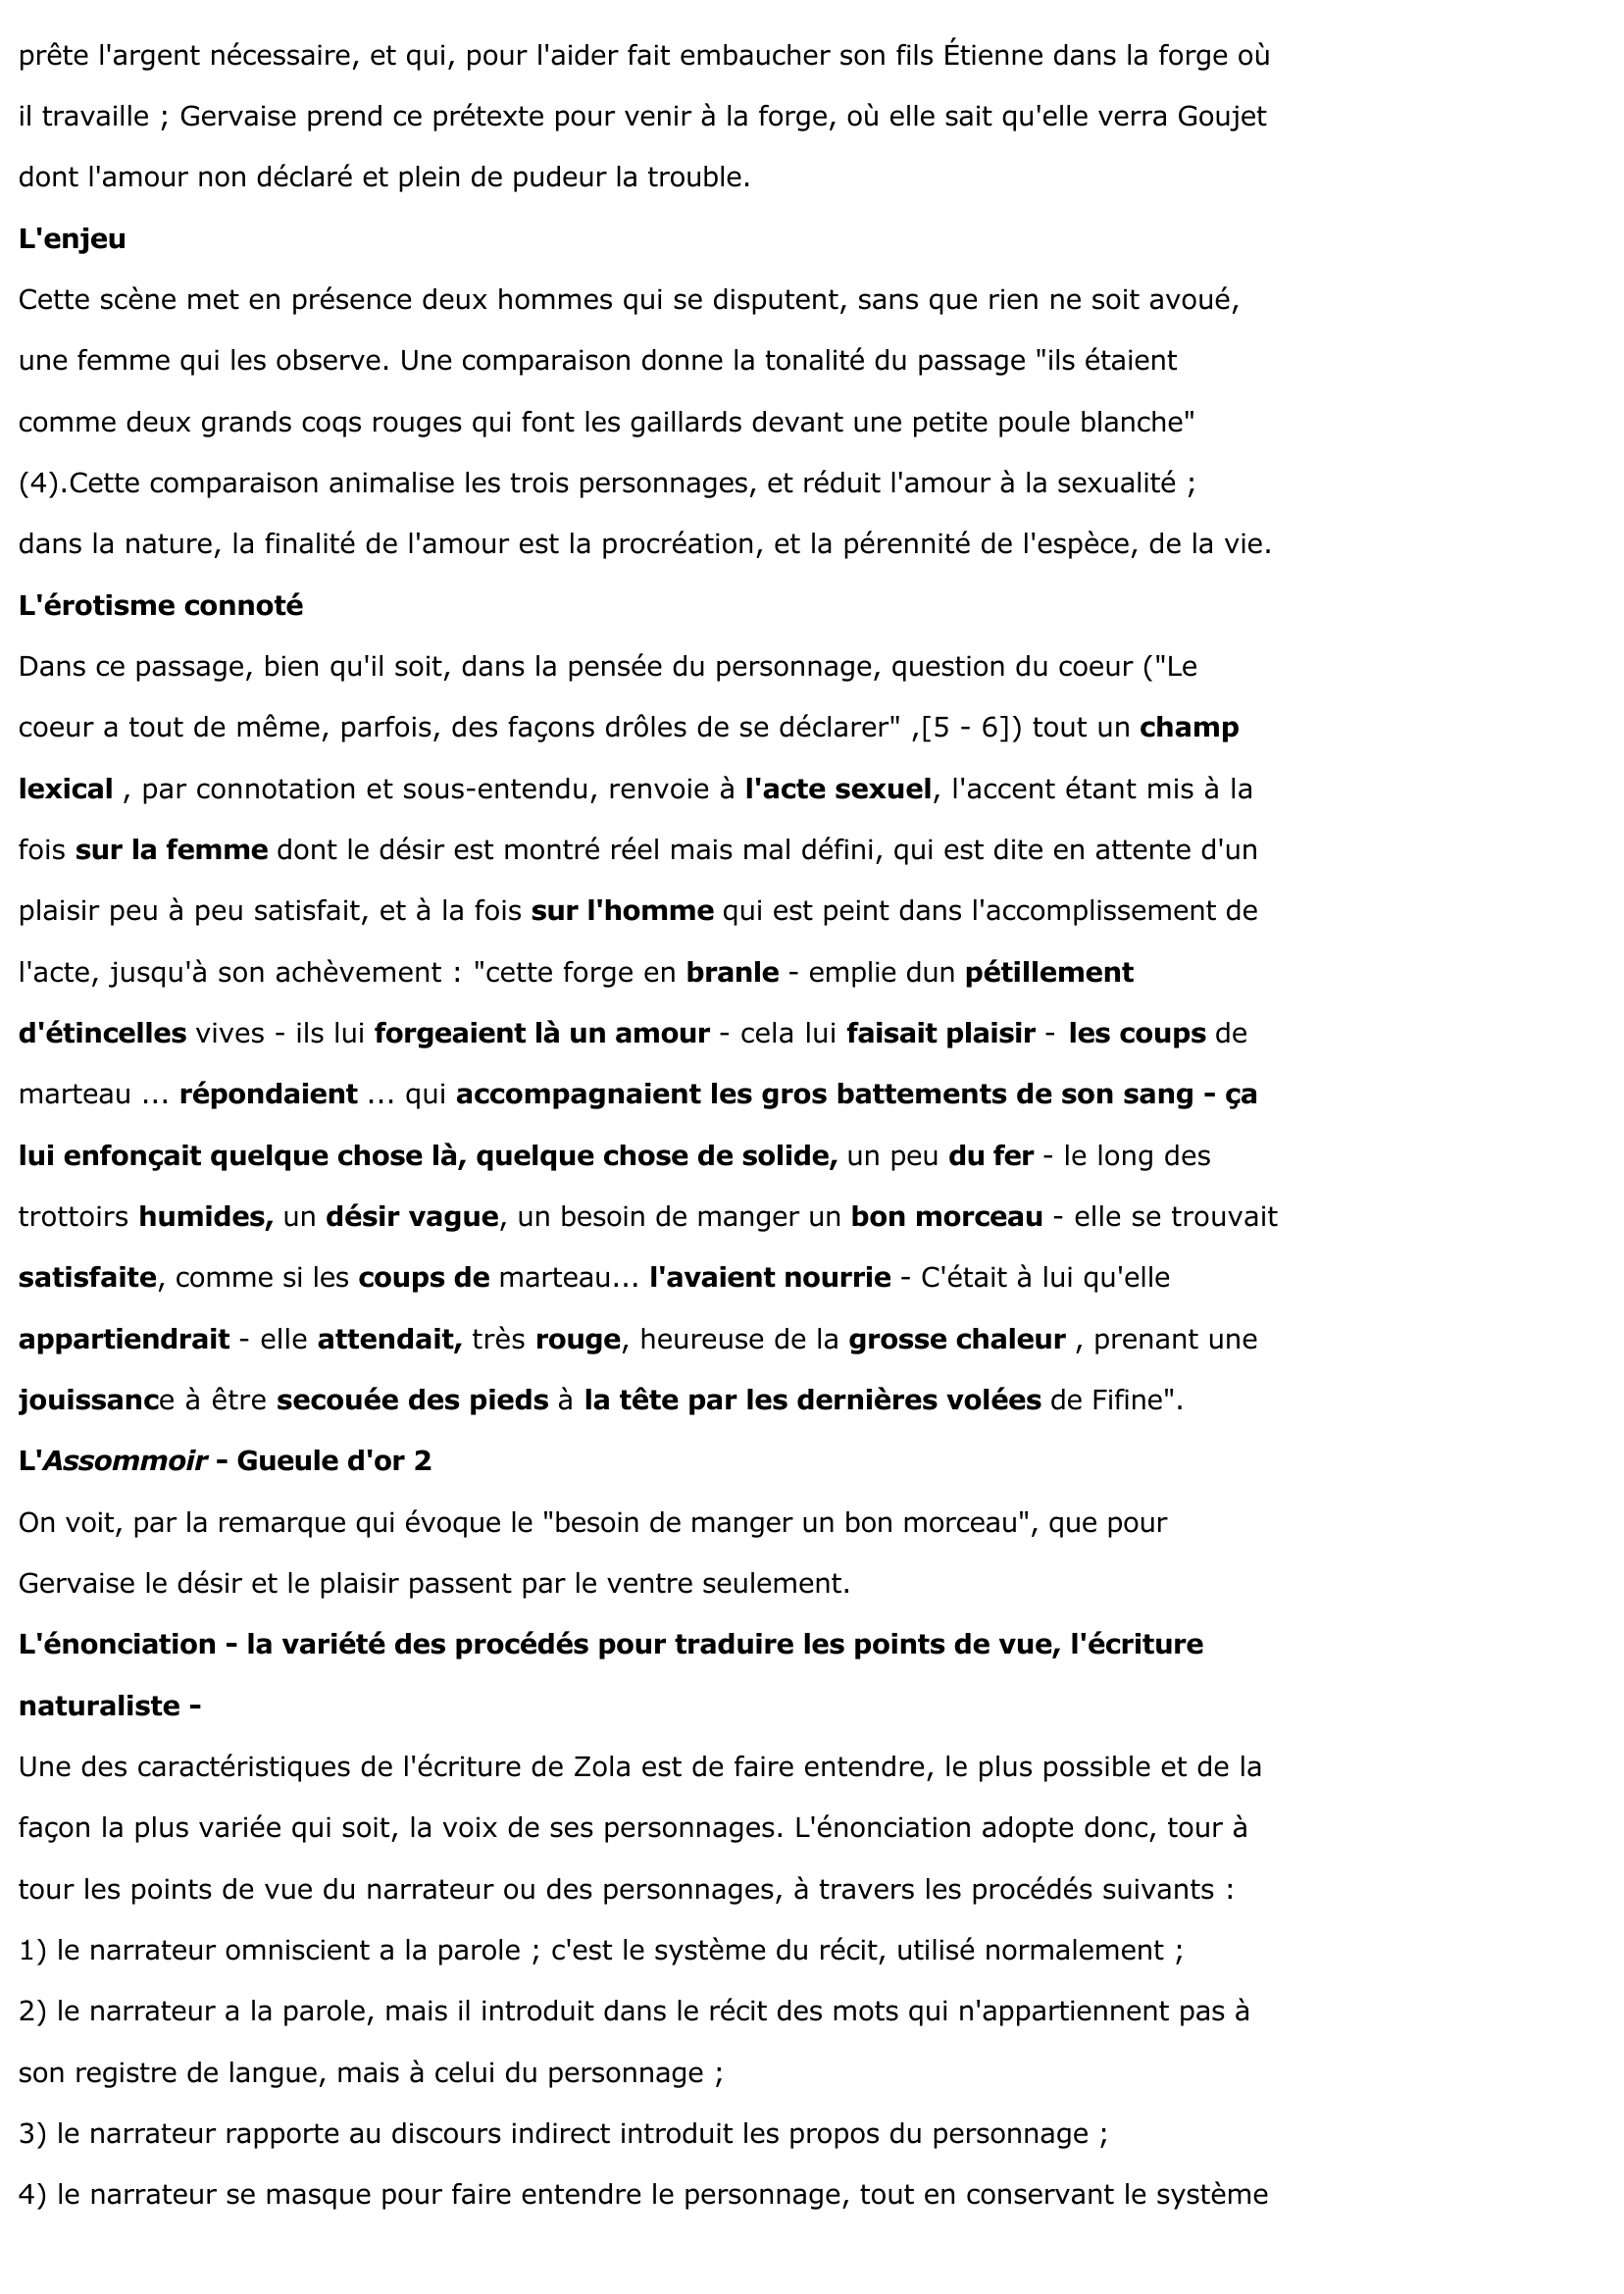 Prévisualisation du document L'Assommoir - Gueule d'Or - extrait du chapitre VI